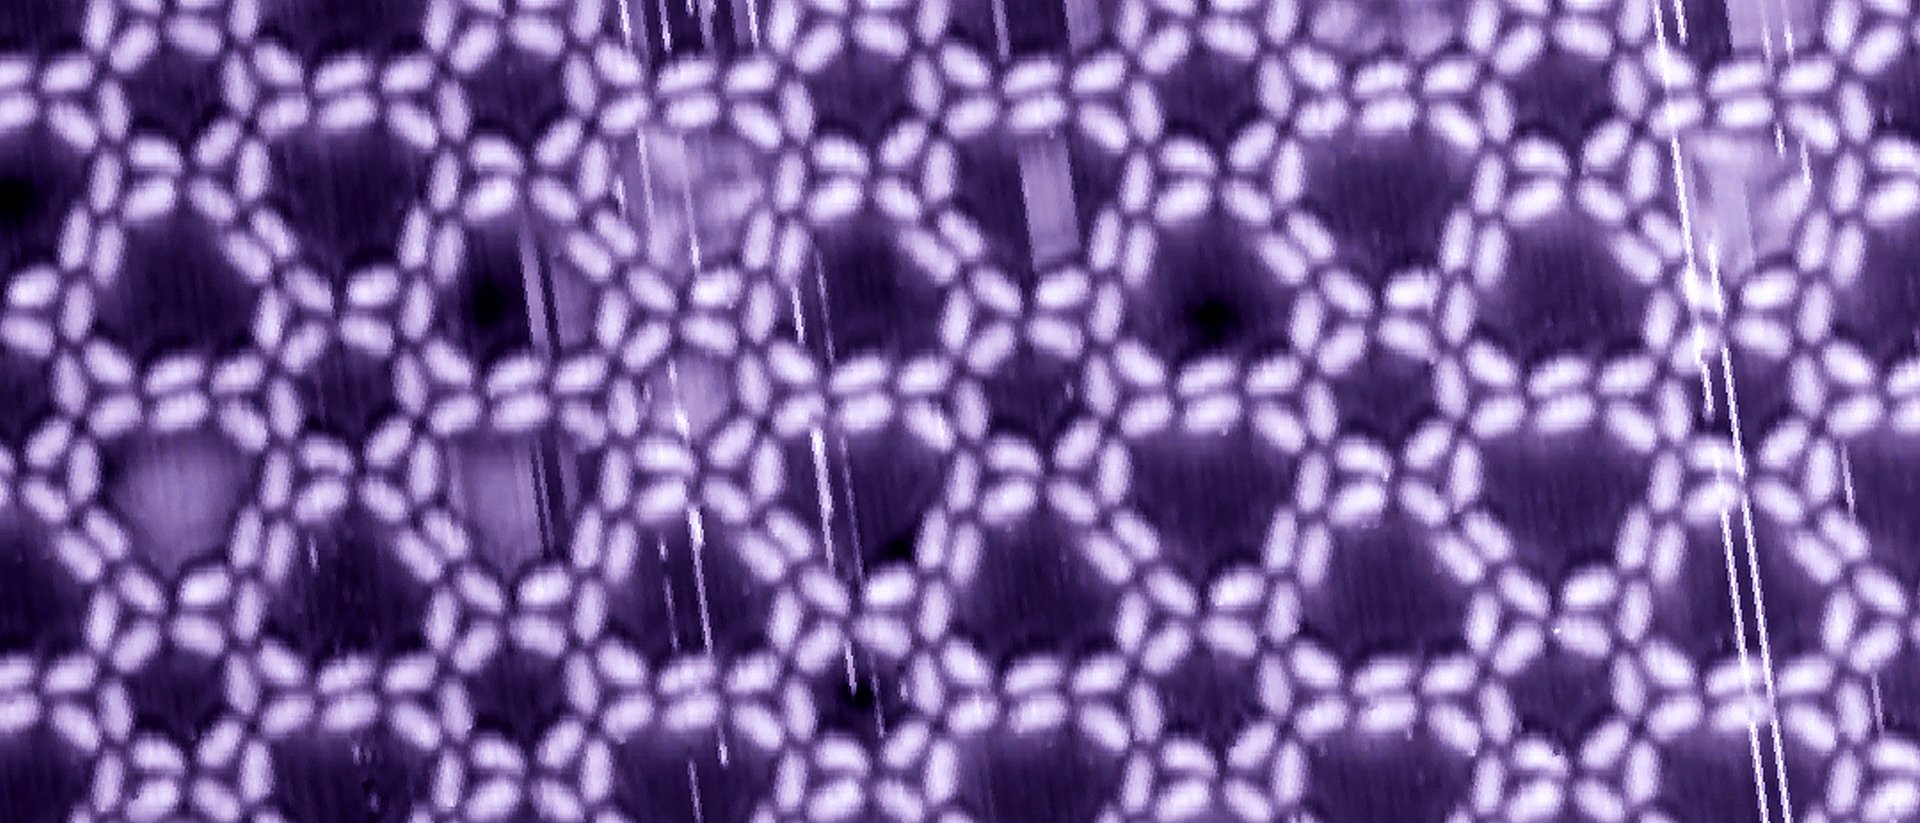 Nanostruktur auf einer Silberoberfläche, gebildet durch Wasserstoffbrücken zwischen den Hydroxamsäure-Gruppen an den Enden des stabförmigen Grundbausteins.